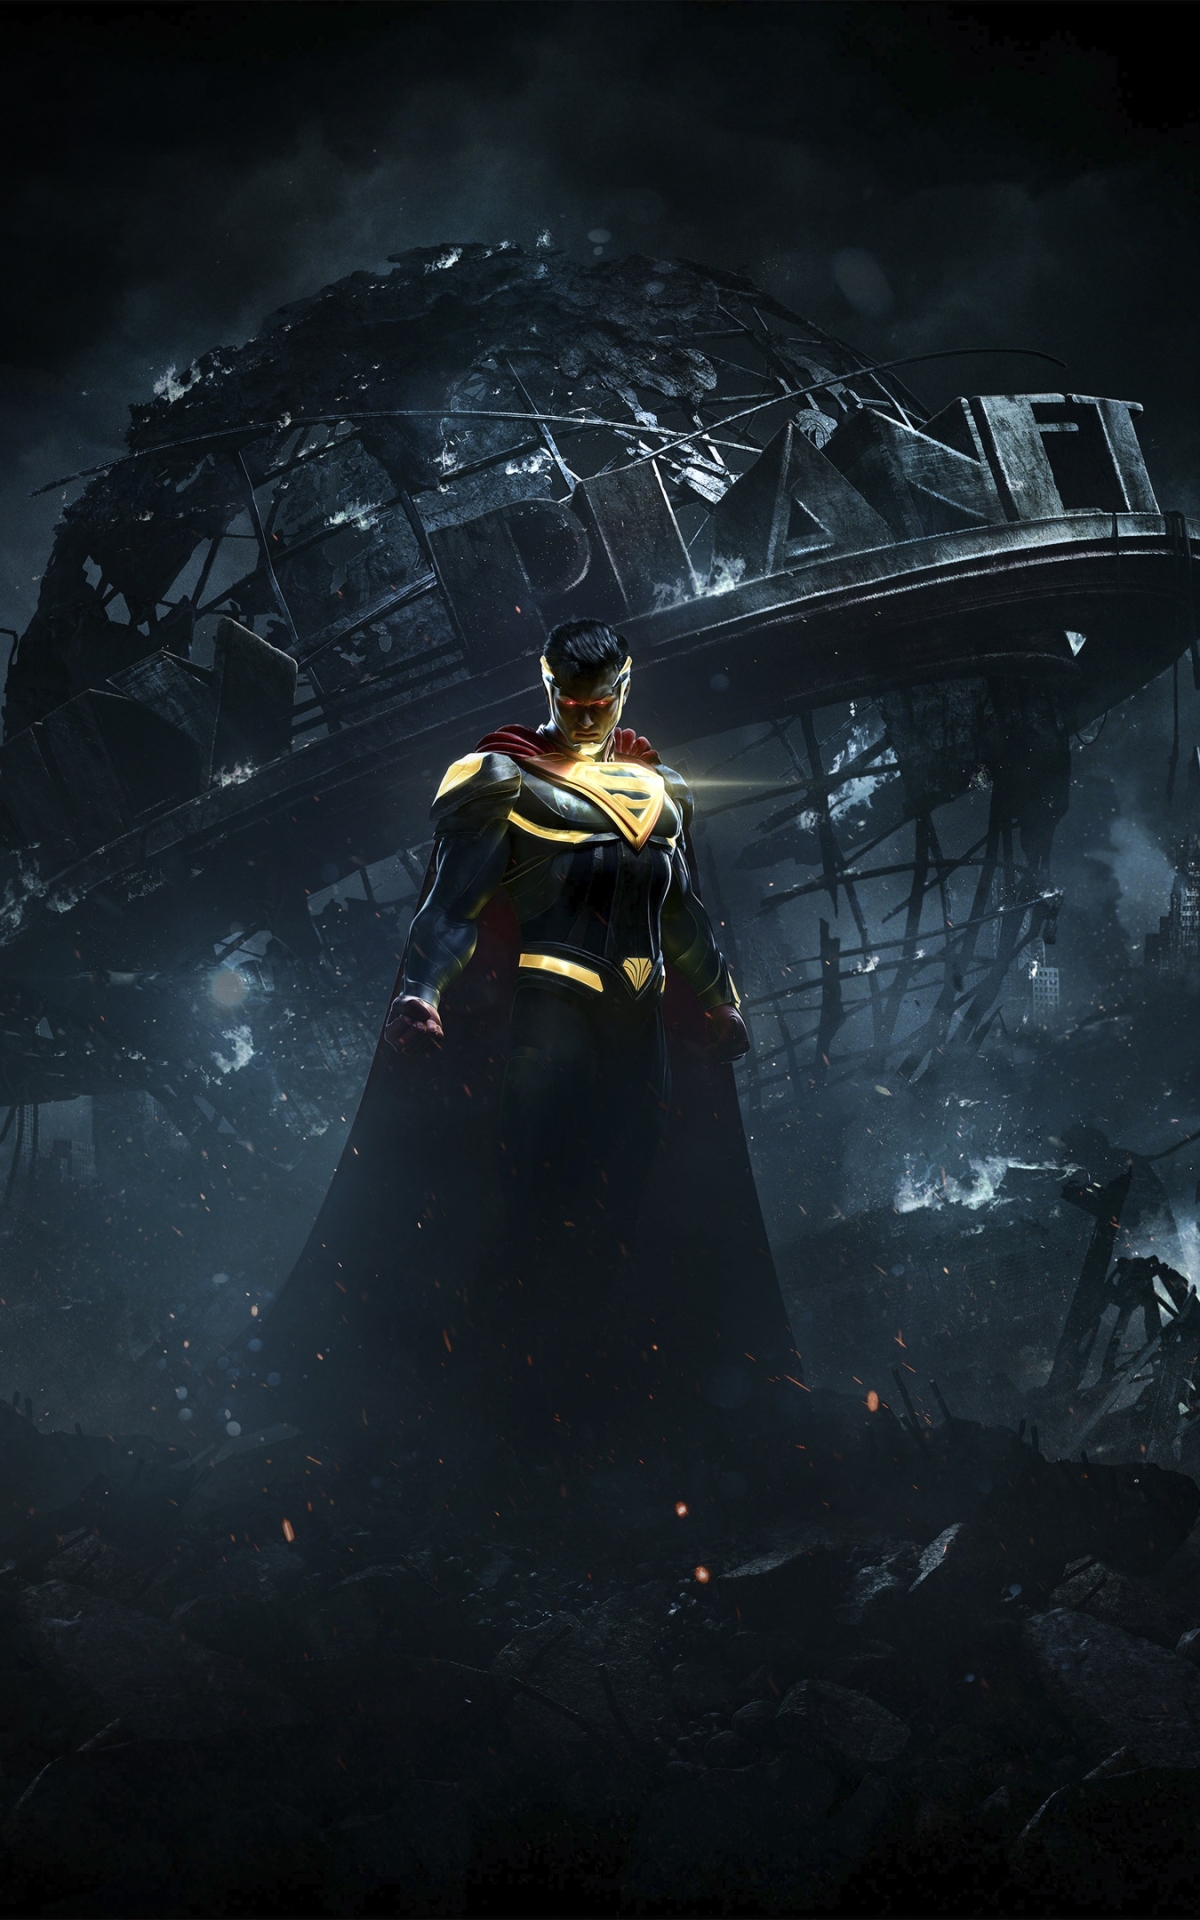 Descarga gratuita de fondo de pantalla para móvil de Superhombre, Videojuego, Injustice: Gods Among Us, Injustice 2.